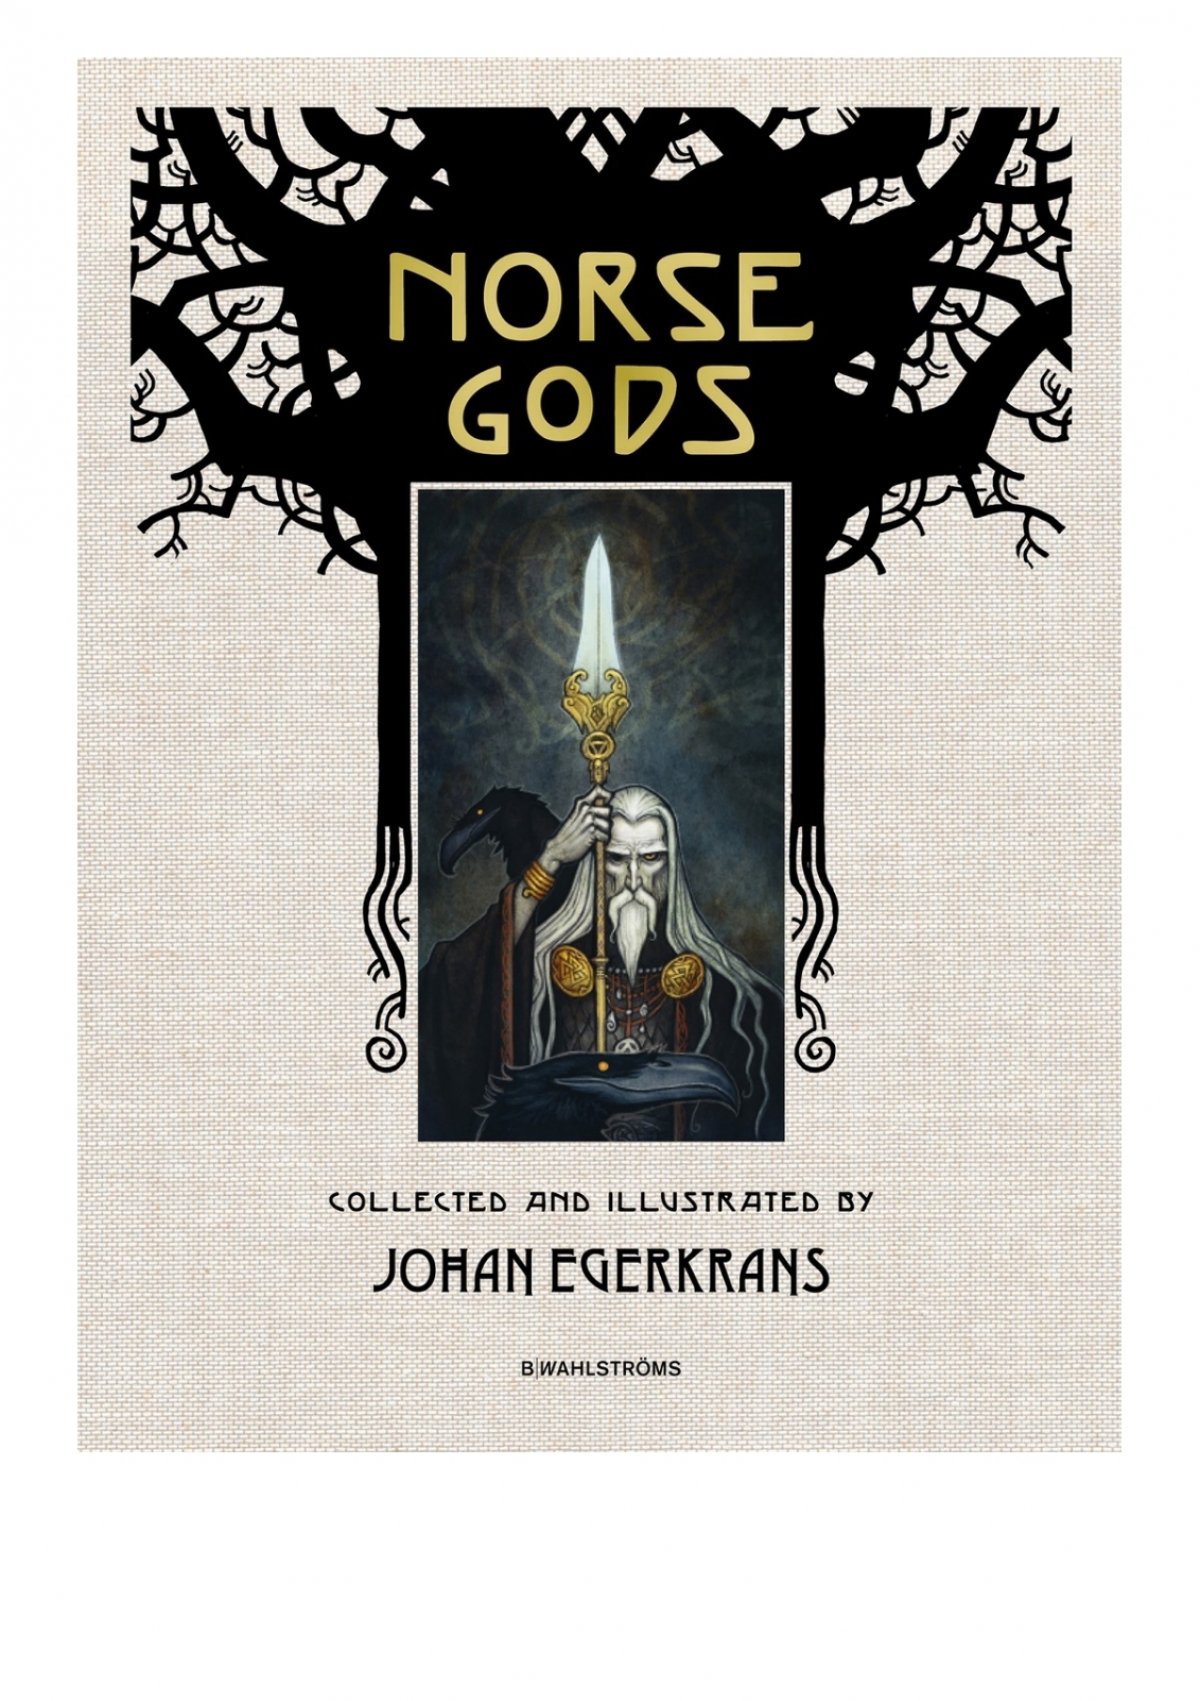 Download Free Pdf Norse Gods By Johan Egerkrans